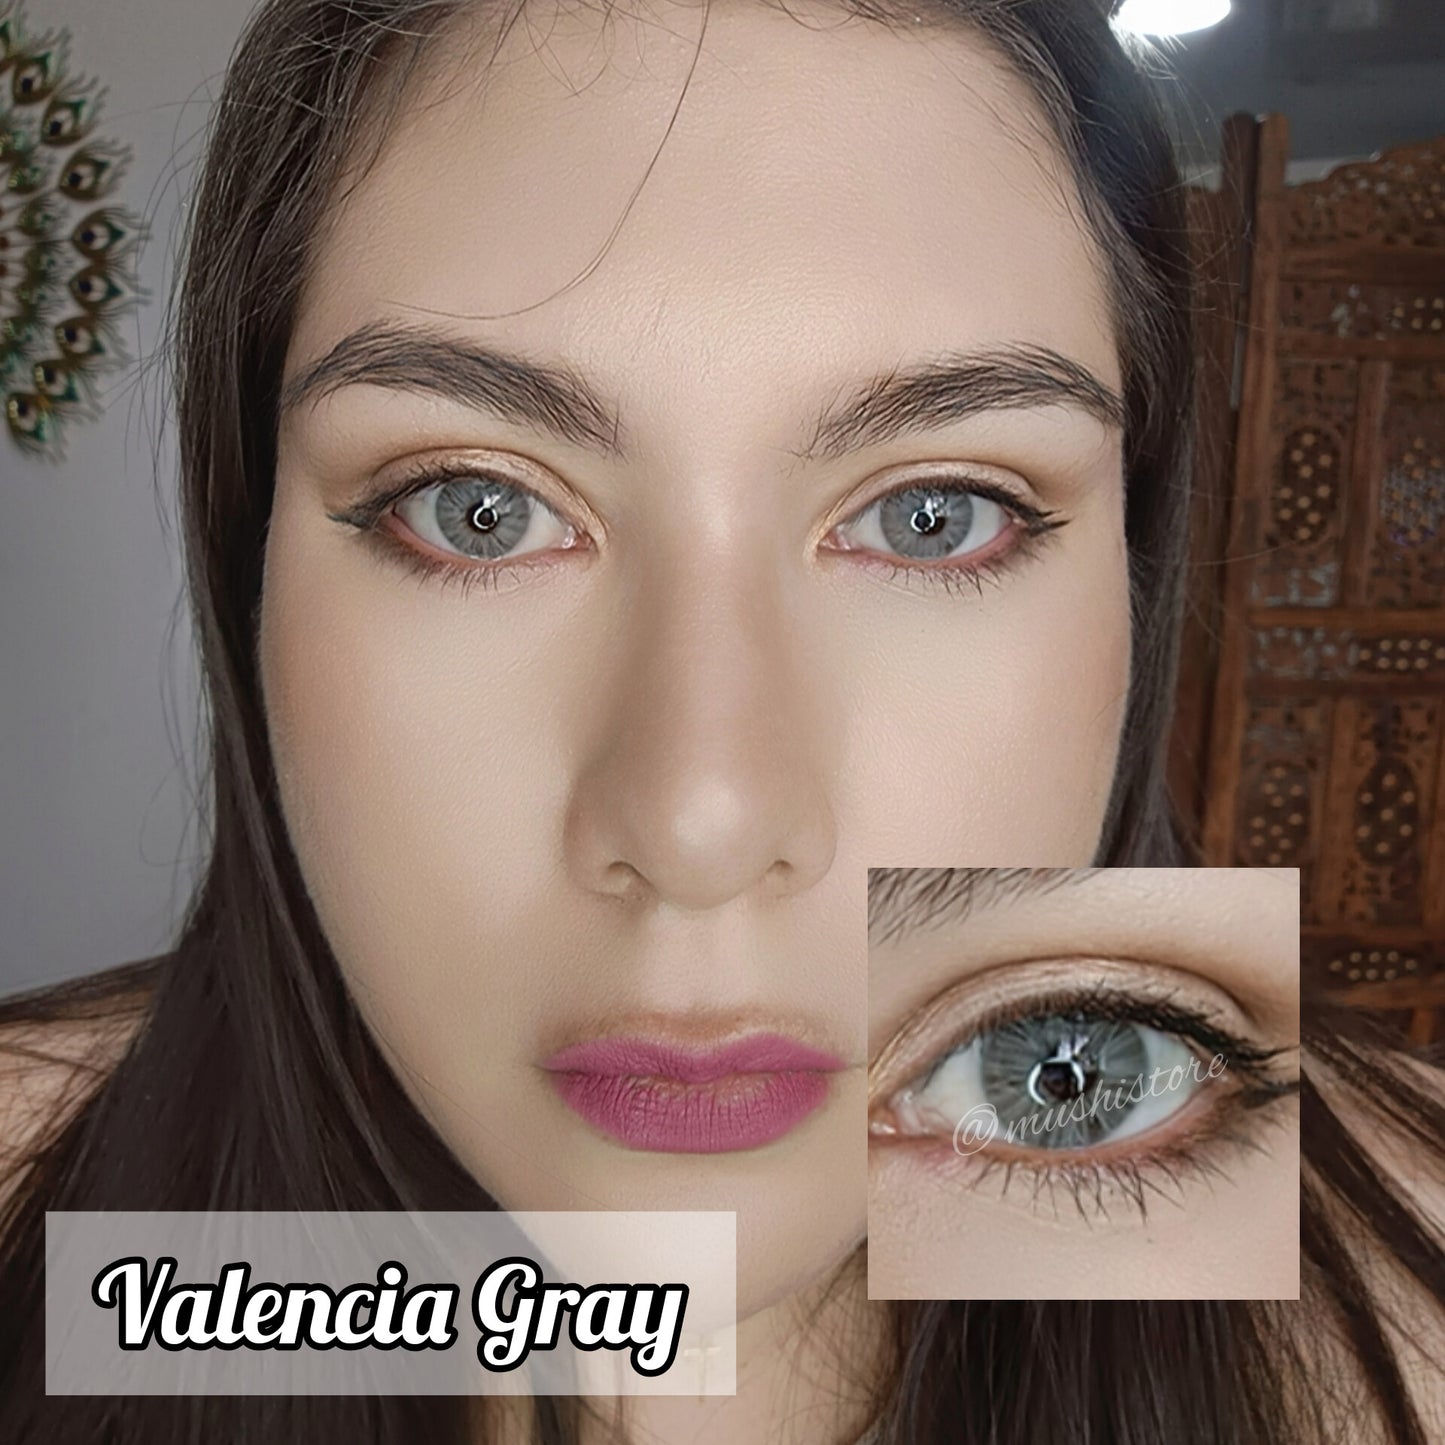 Valencia Gray